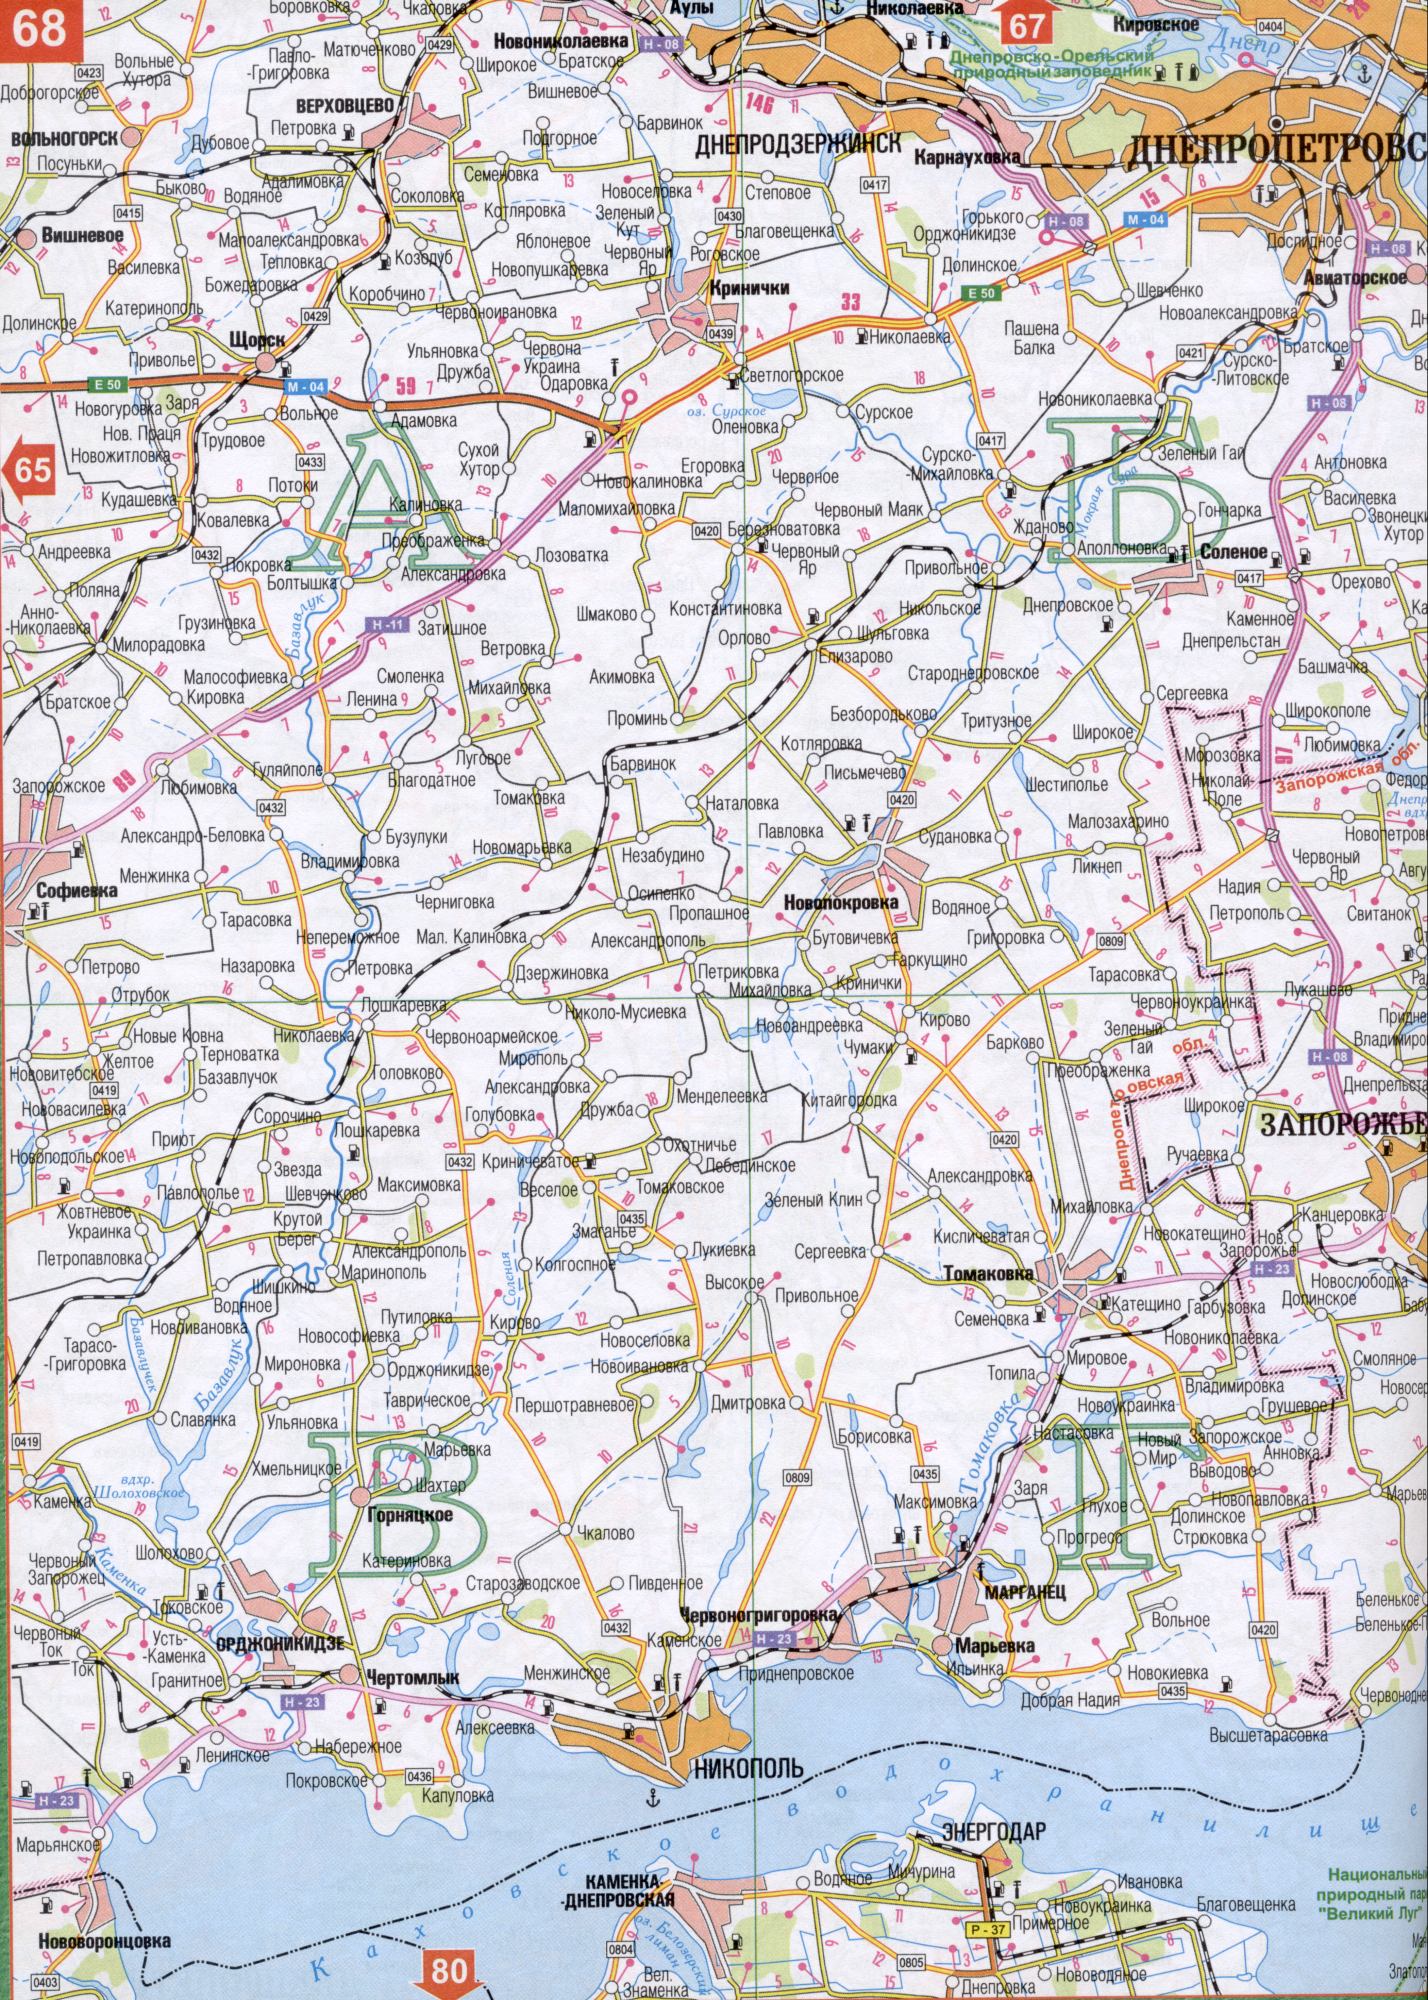 Карта Днепропетровской области Украины 1см=5км. Подробная карта дорог - Днепрпетровская область. Скачать бесплатно Мжа, Уды